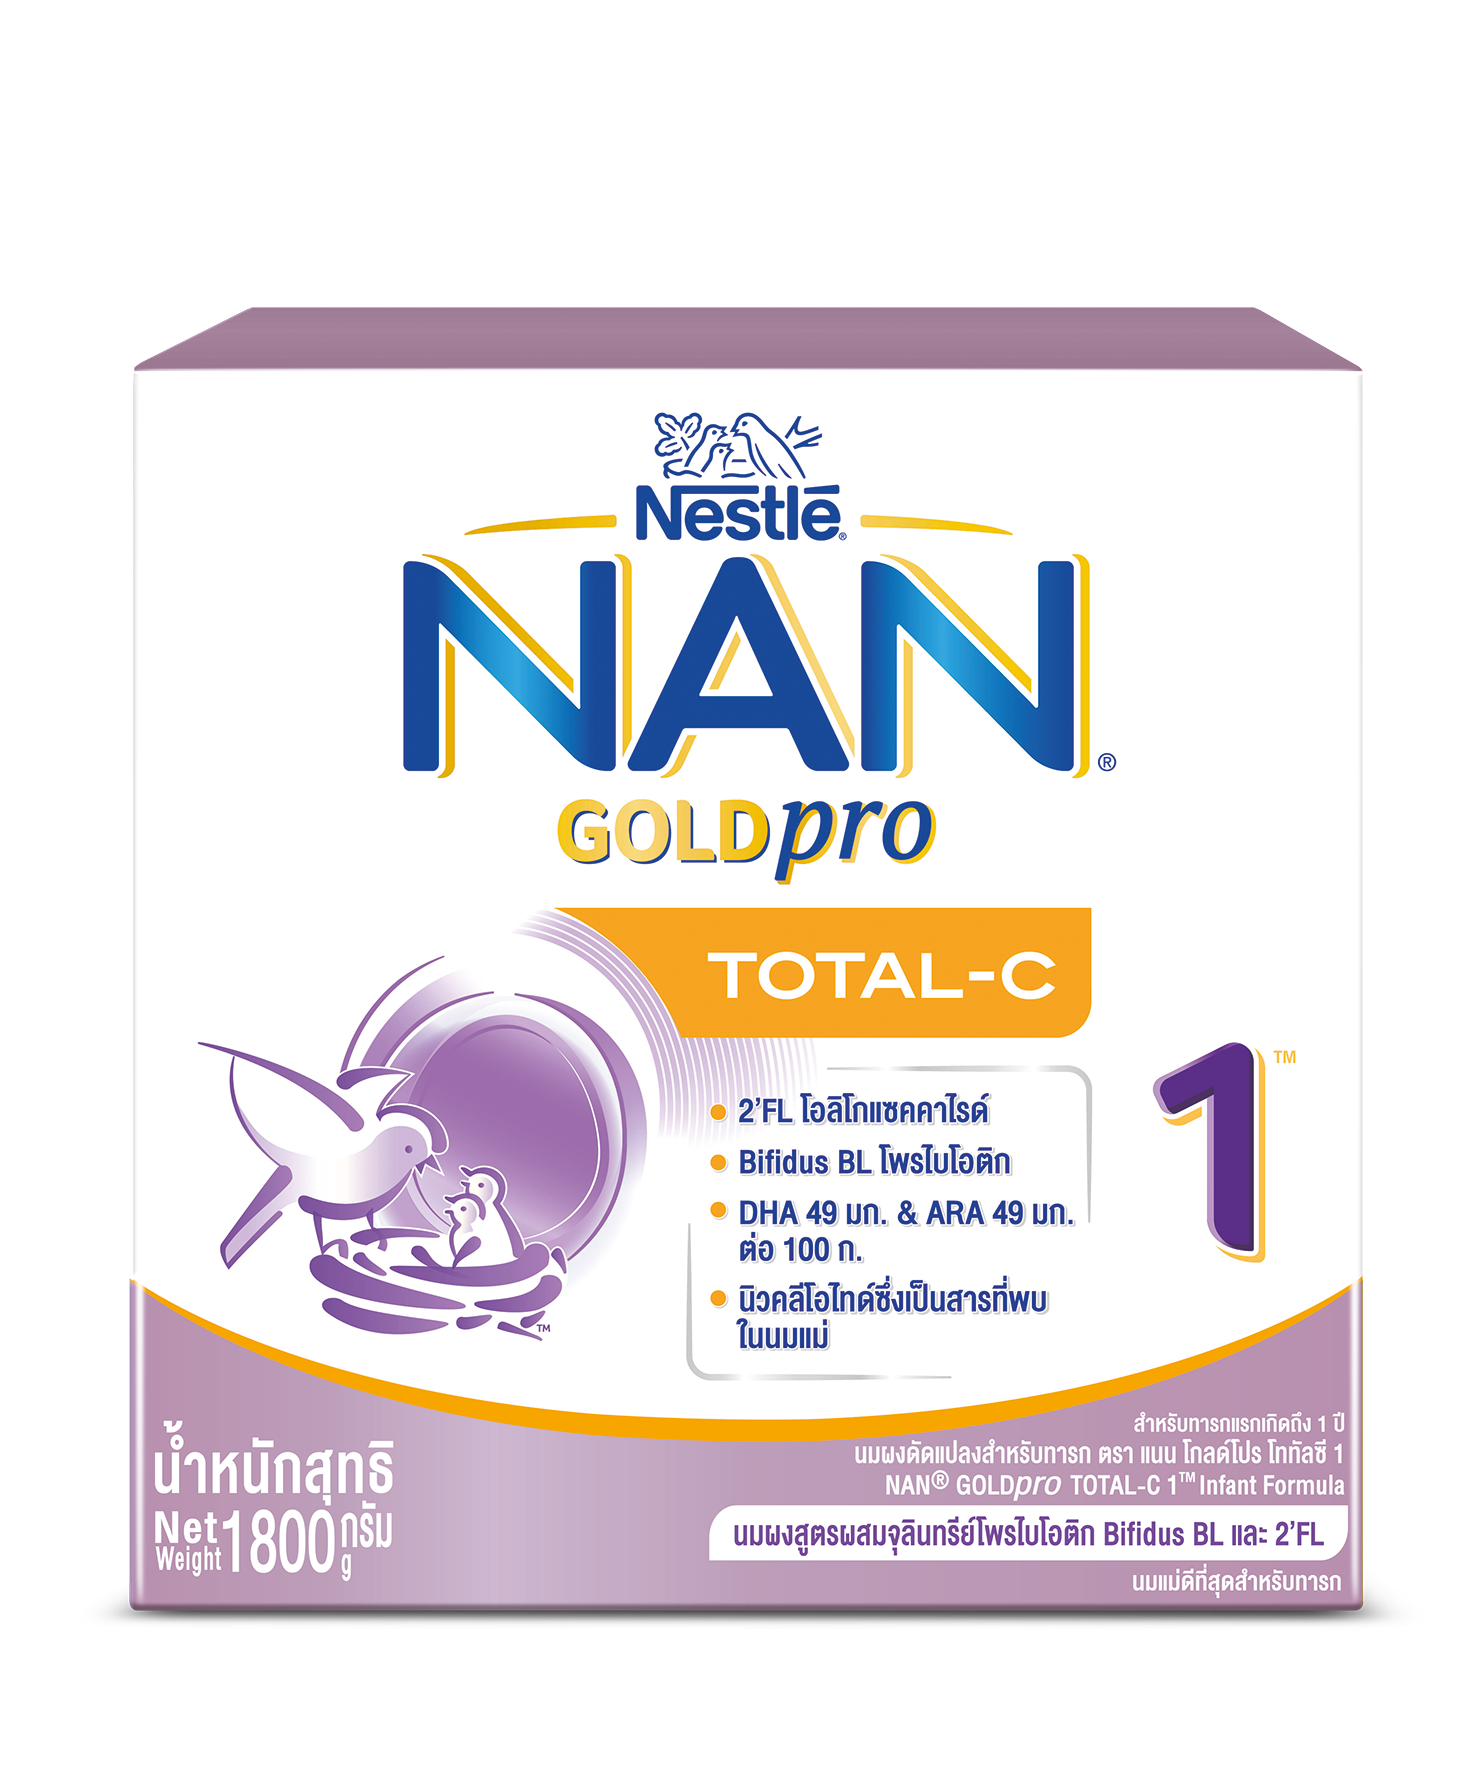 ข้อมูลประกอบของ [นมผง] NAN GOLDpro นมผง แนน โกลด์โปร โททัลซี 1 สูตร 1  1,800 กรัม นมผงสำหรับเด็กแรกเกิด - 1 ปี 800 กรัม